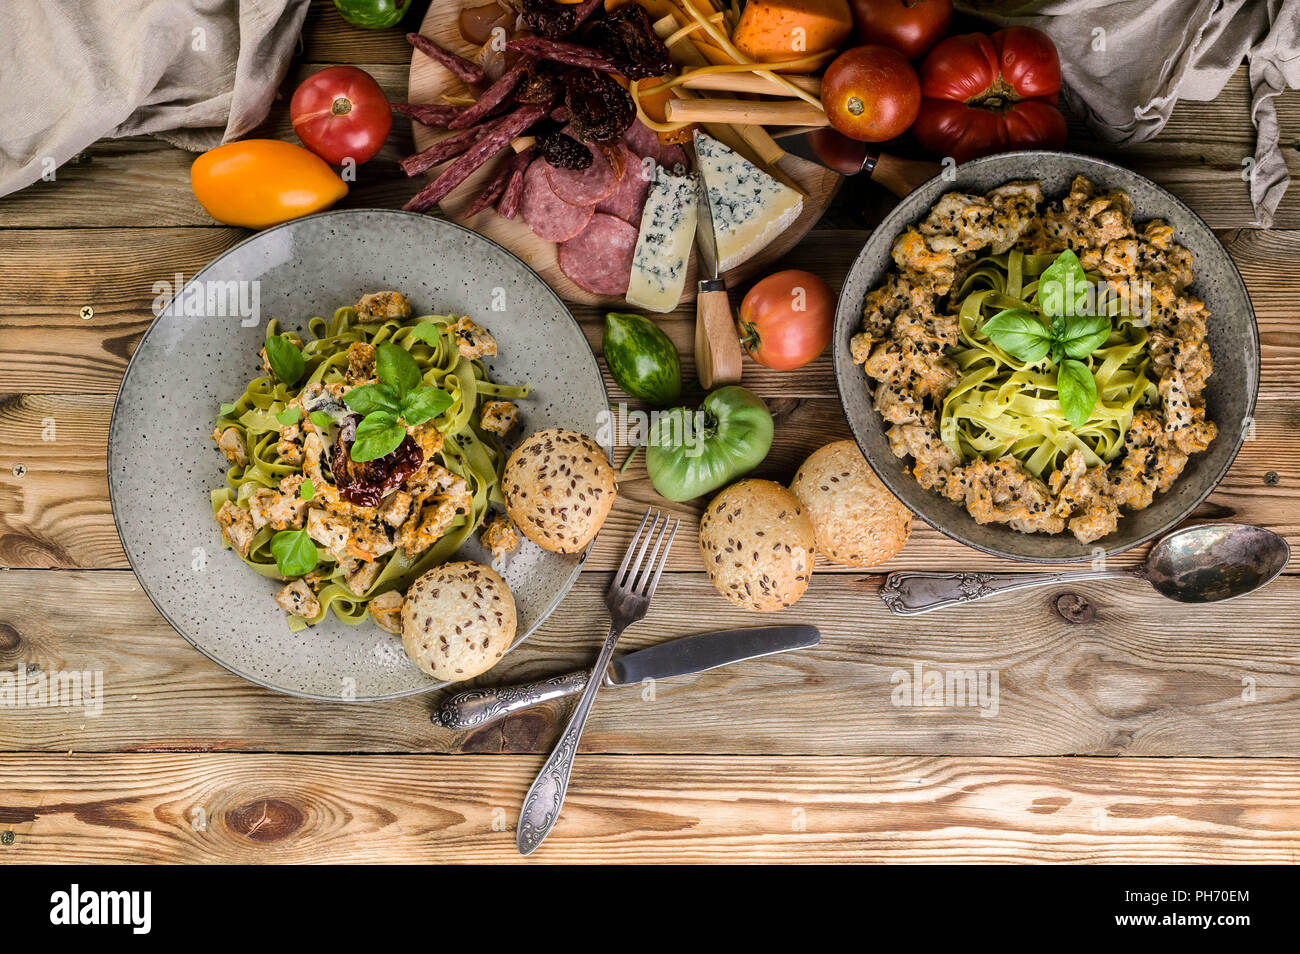 Pesto pâtes à la viande et aux champignons, une variété de fromages, viandes fumées et saucisses, légumes et herbes épicées sur une table en bois. Vue d'en haut Banque D'Images